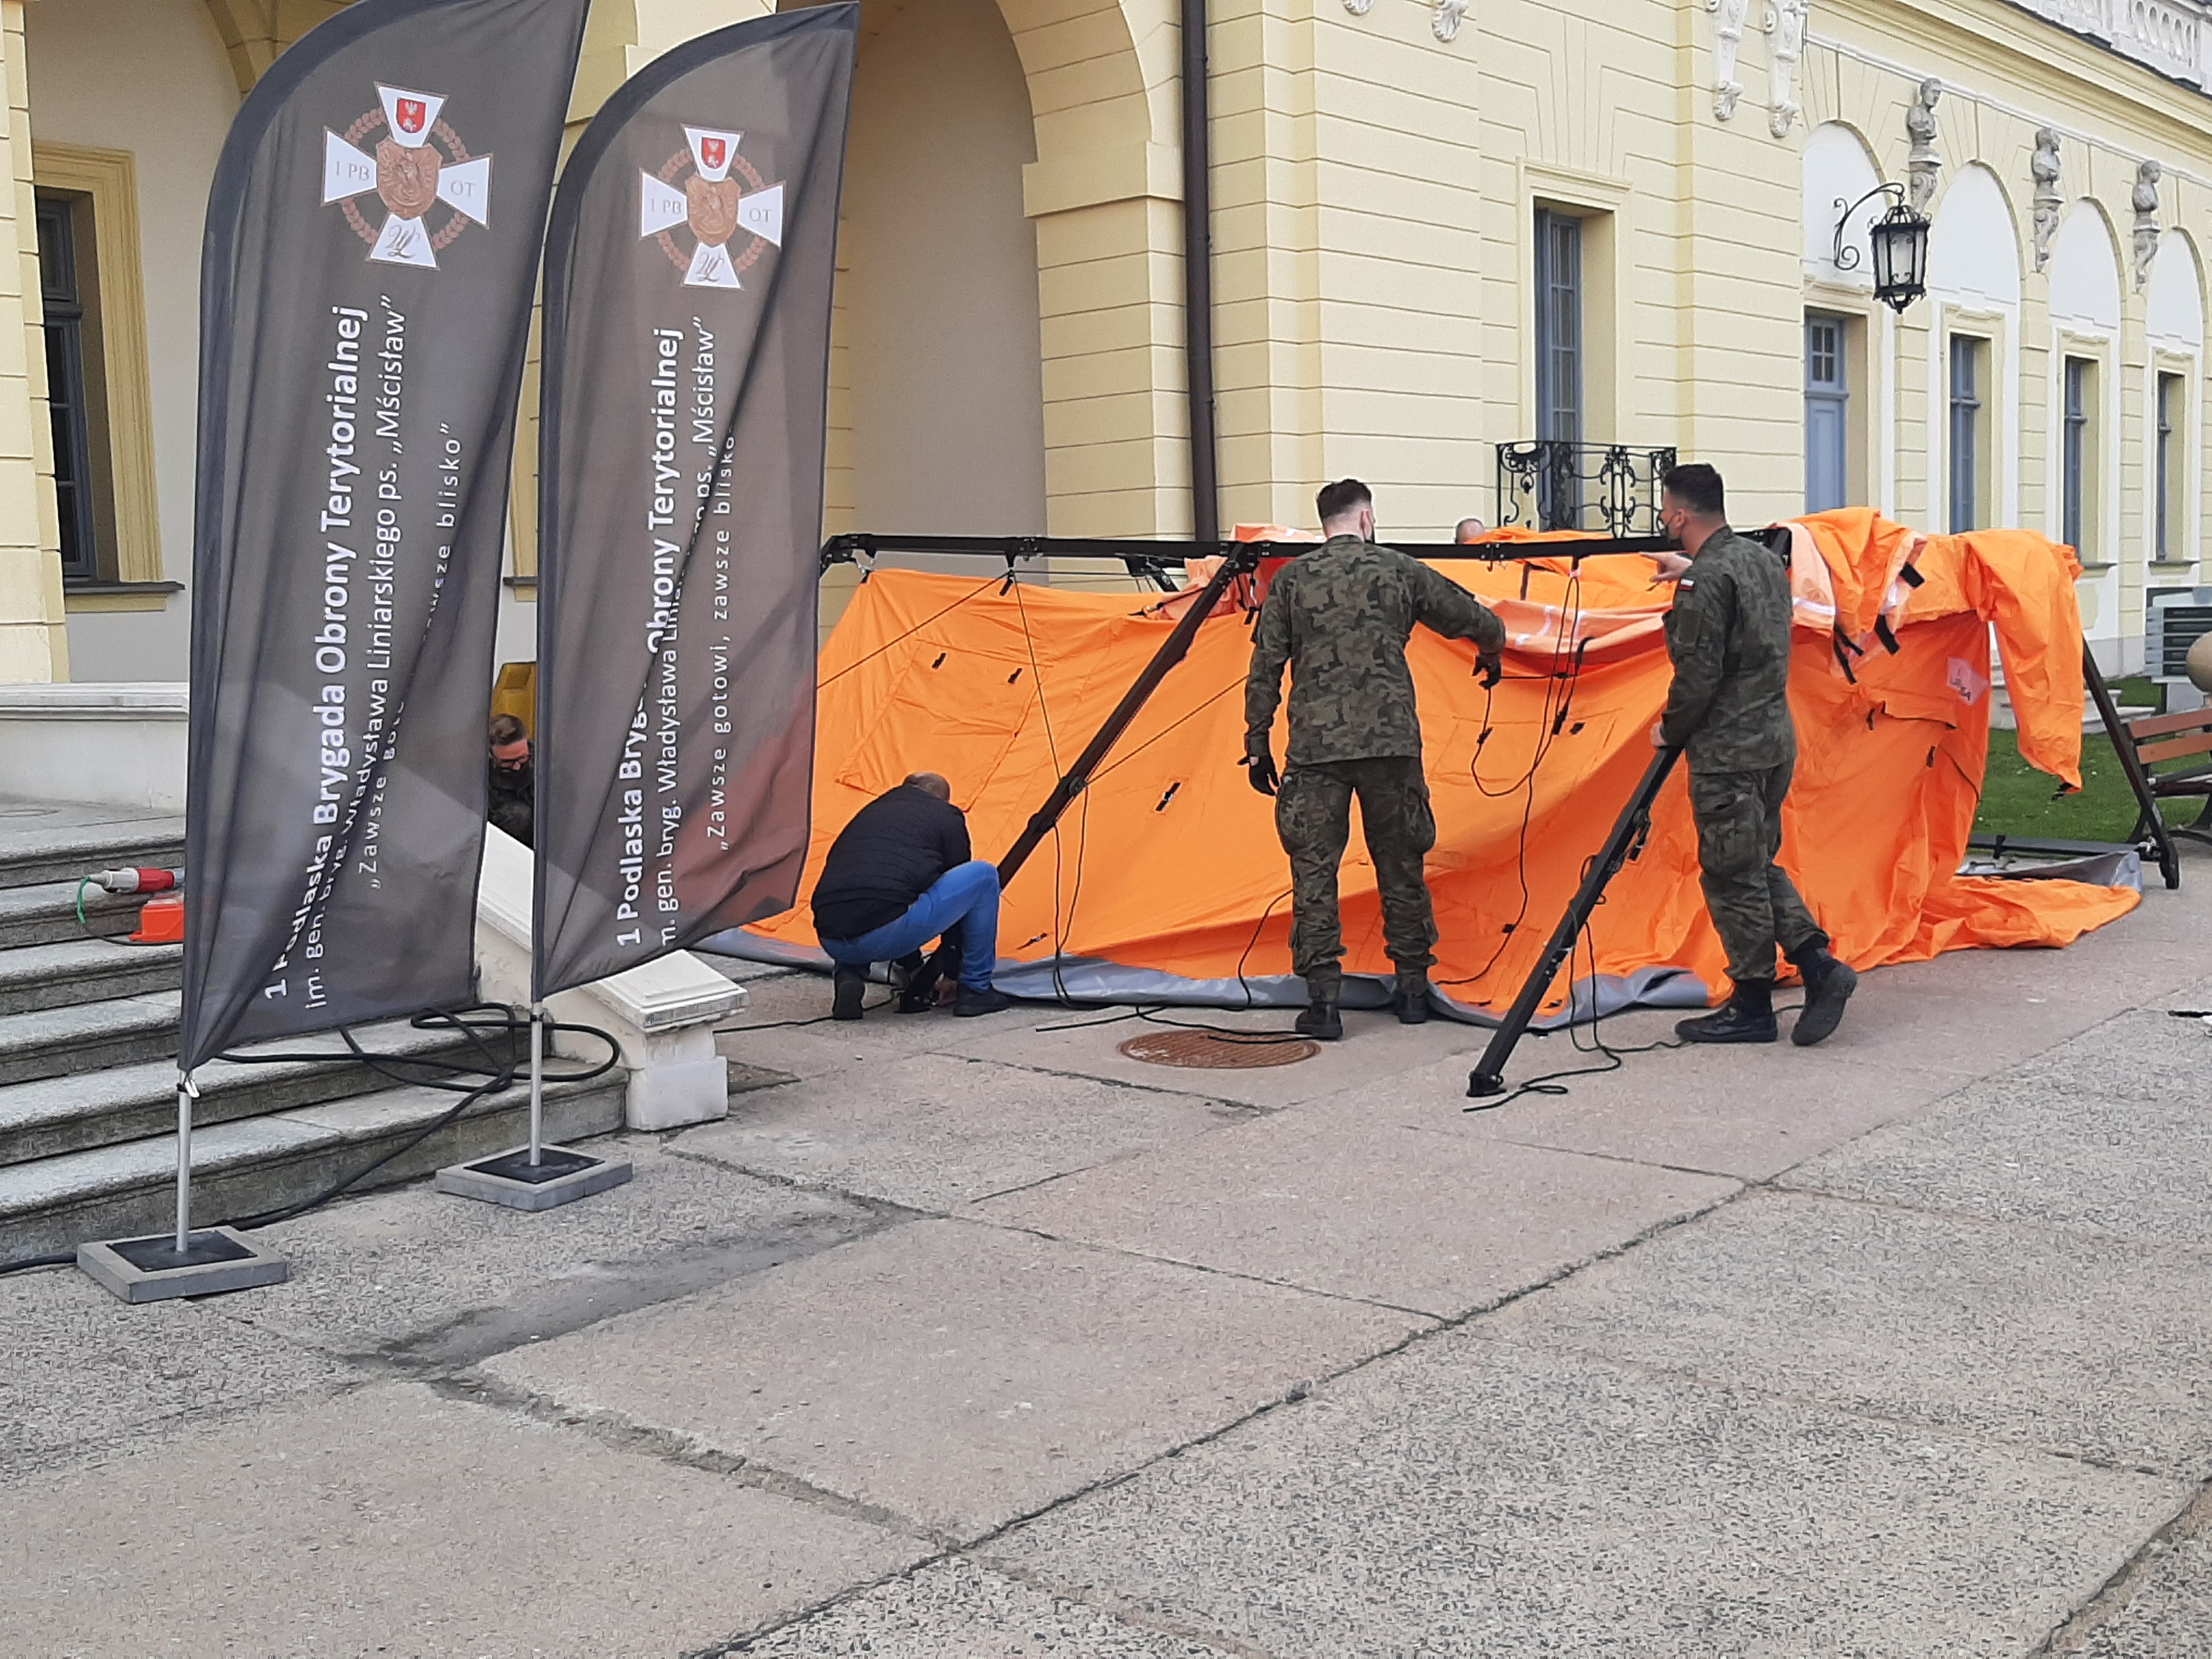 Na dziedzińcu Pałacu Branickich żołnierze rozstawią pomarańczowy namiot. Z lewej strony stoją flagi Wojsk Obrony Terytorialnej